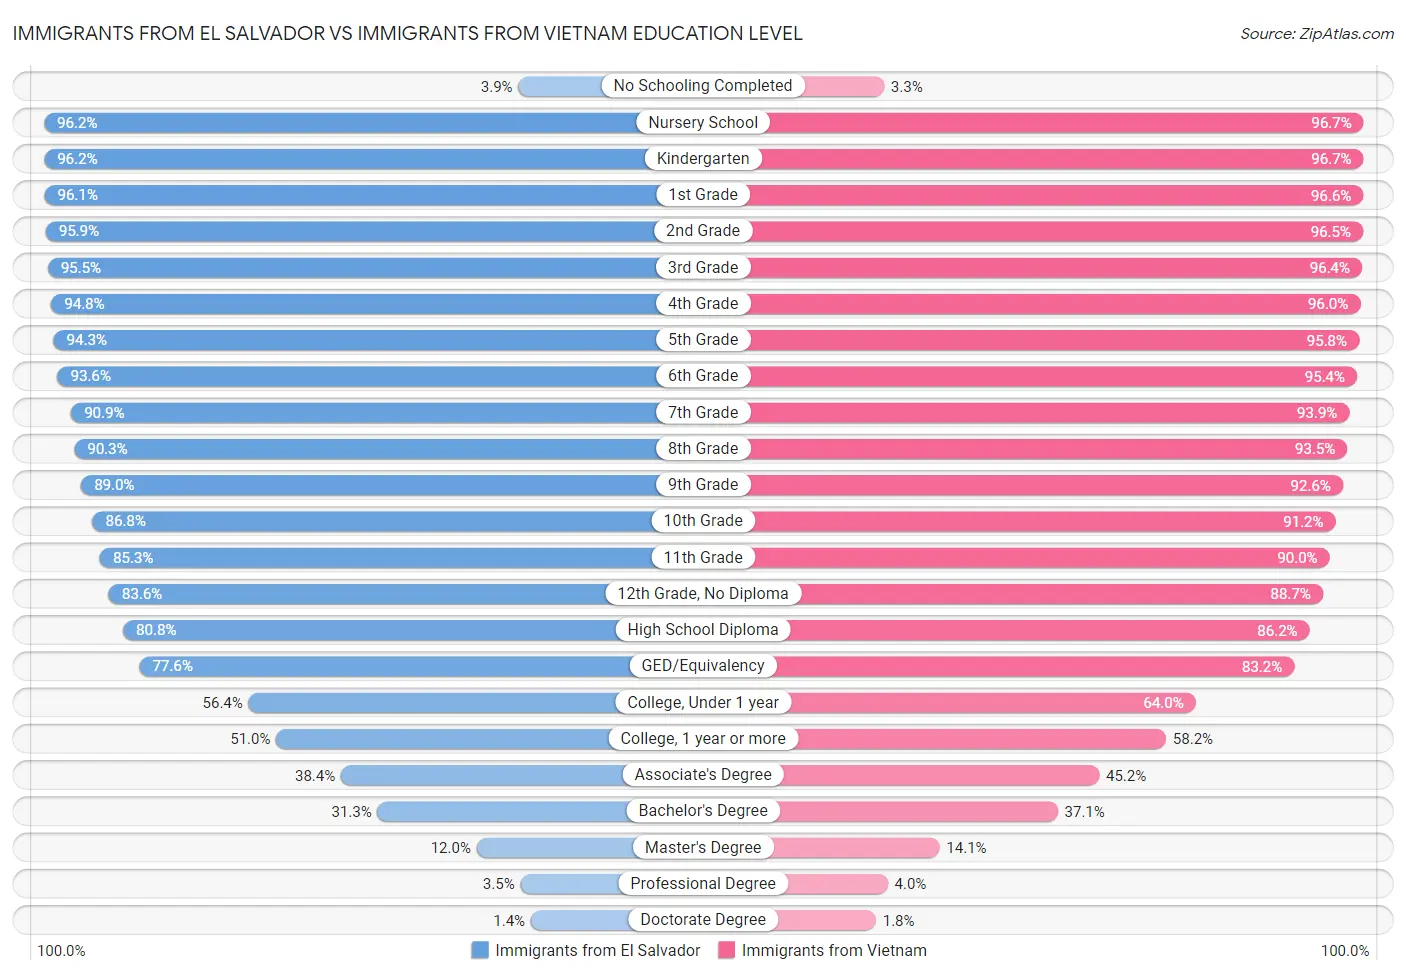 Immigrants from El Salvador vs Immigrants from Vietnam Education Level